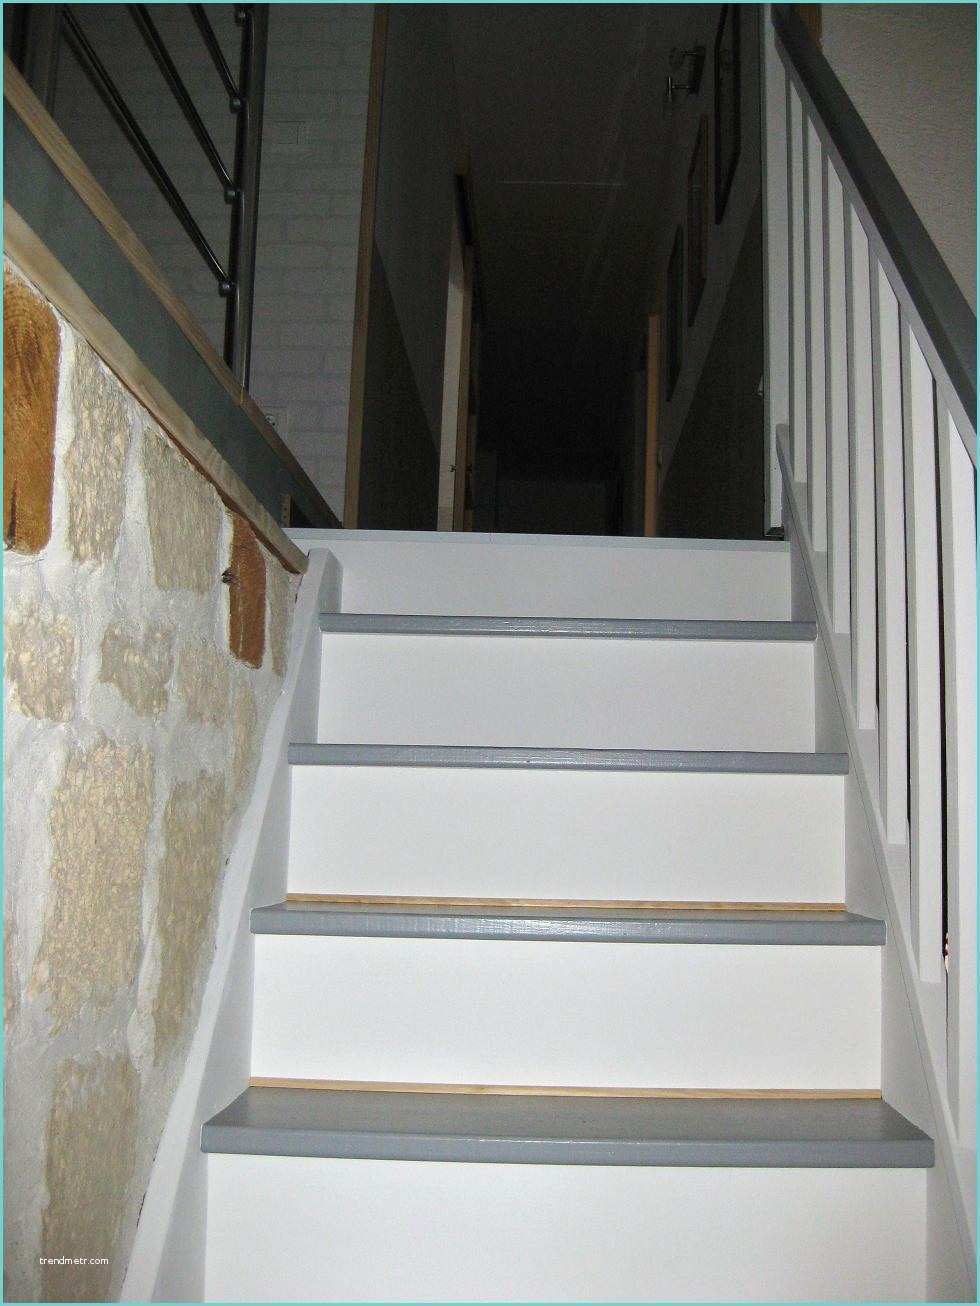 Escalier Repeint En Blanc Escalier Photo 5 6